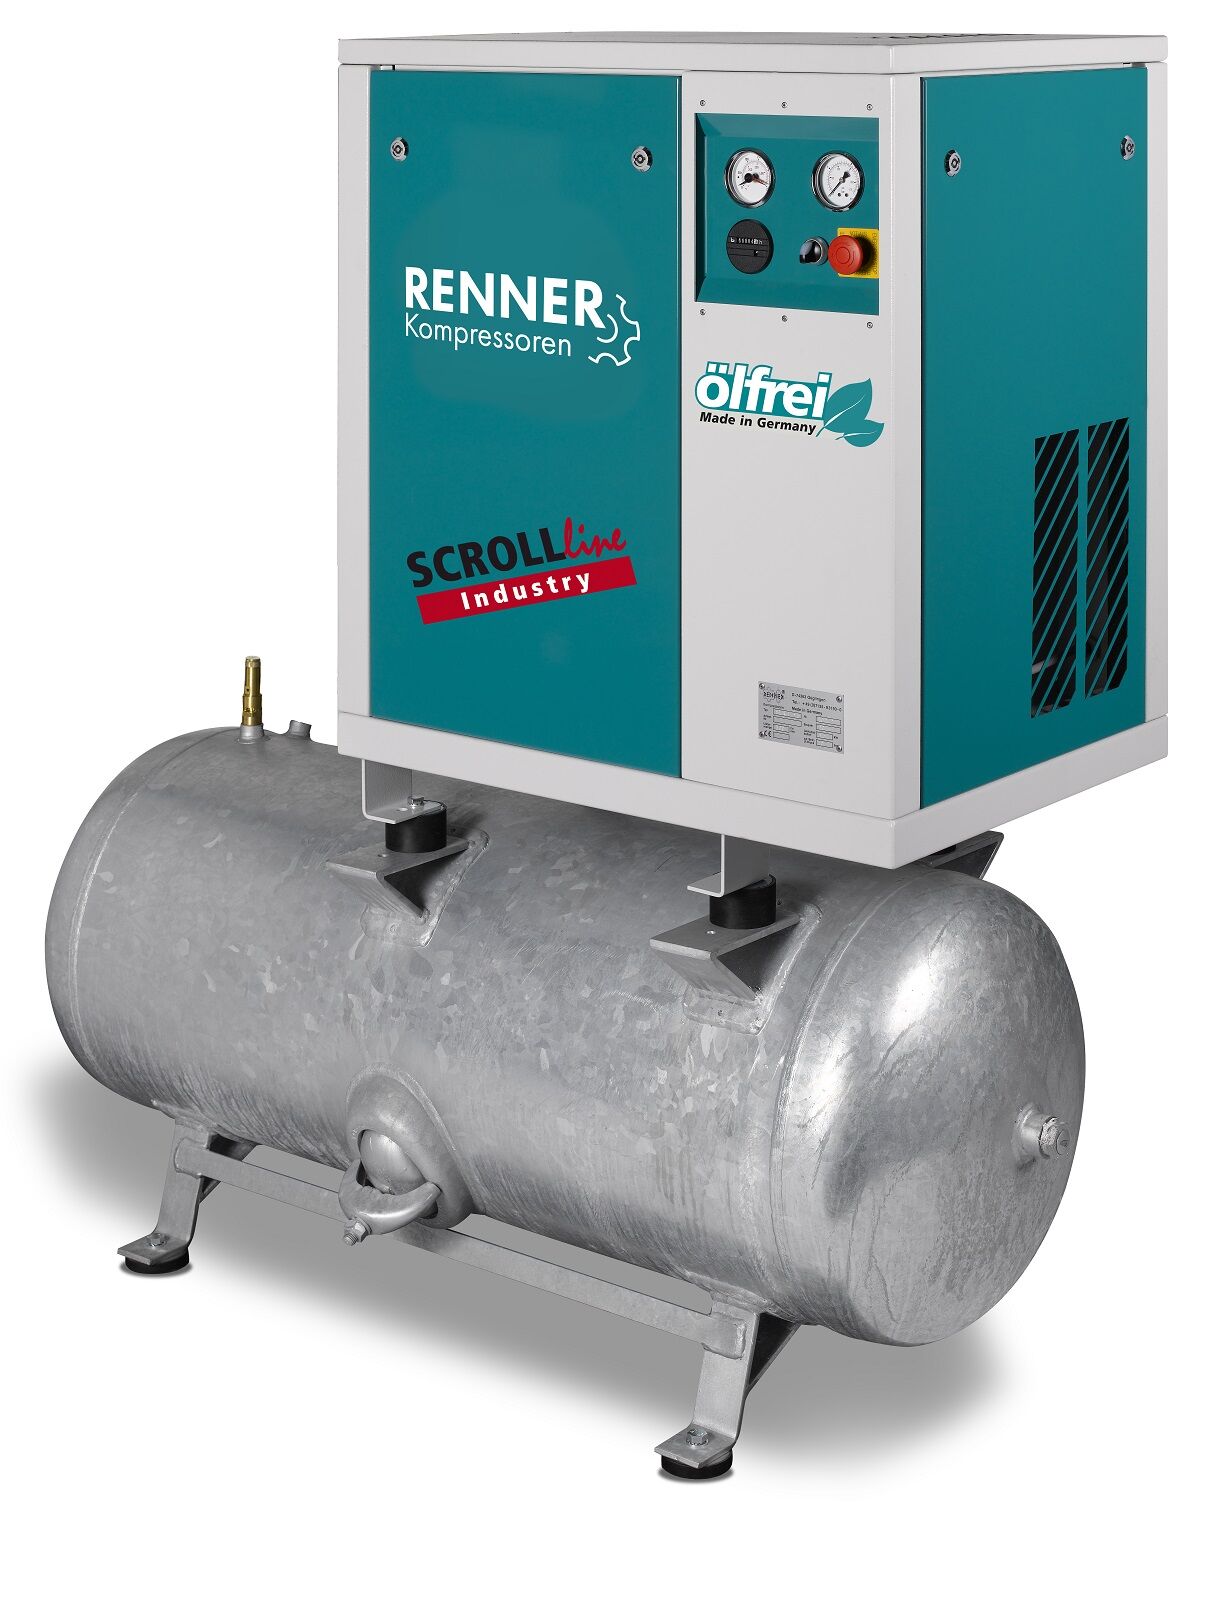 RENNER-Kompressor SLD-I 1,5 auf 250 Liter Druckbehälter - Industry ölfreier Scrollkompressor